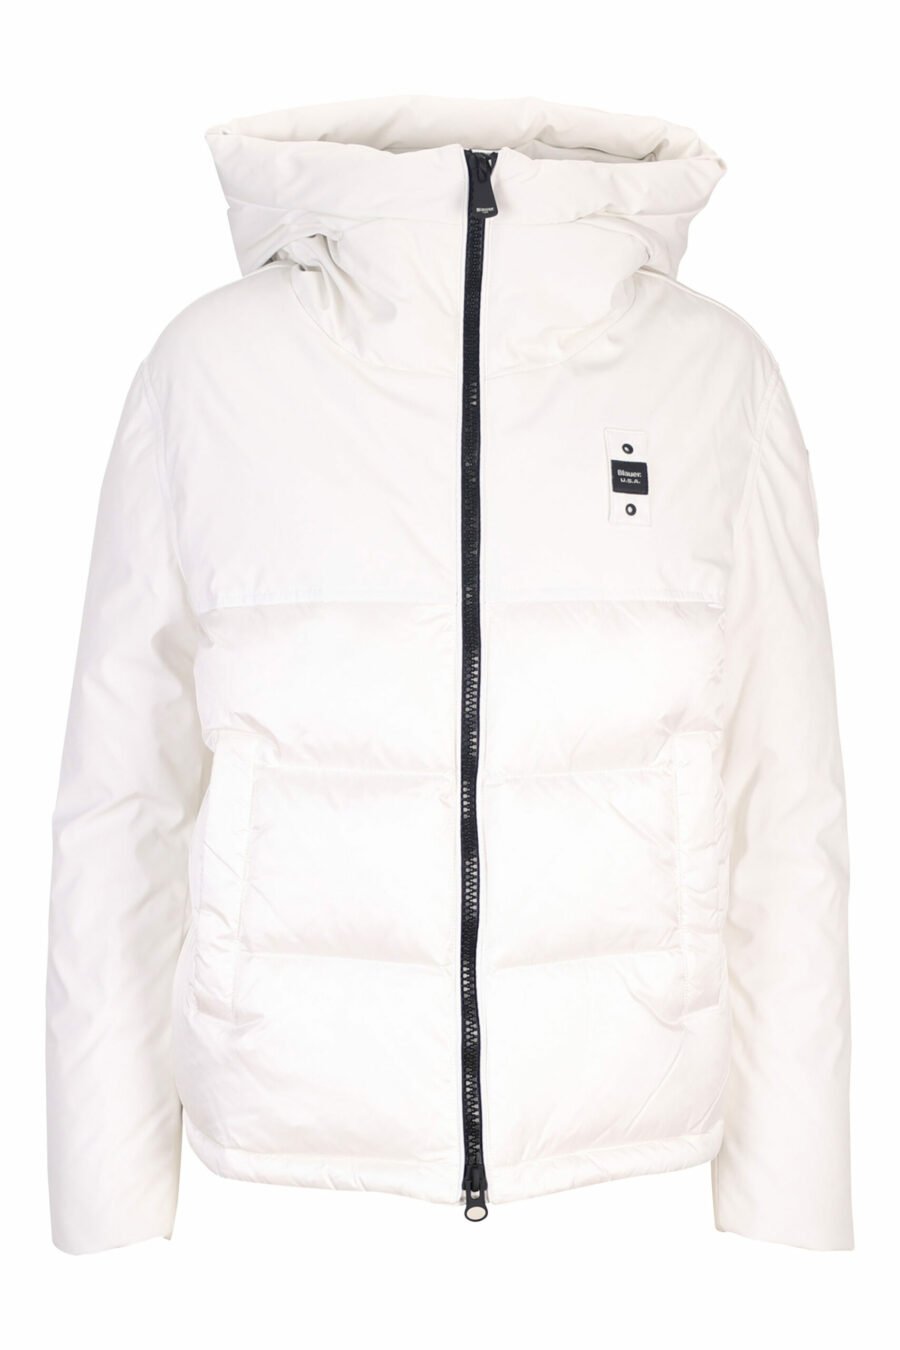 Veste blanche à capuche doublée droite avec patch logo - 8058610610753 scaled